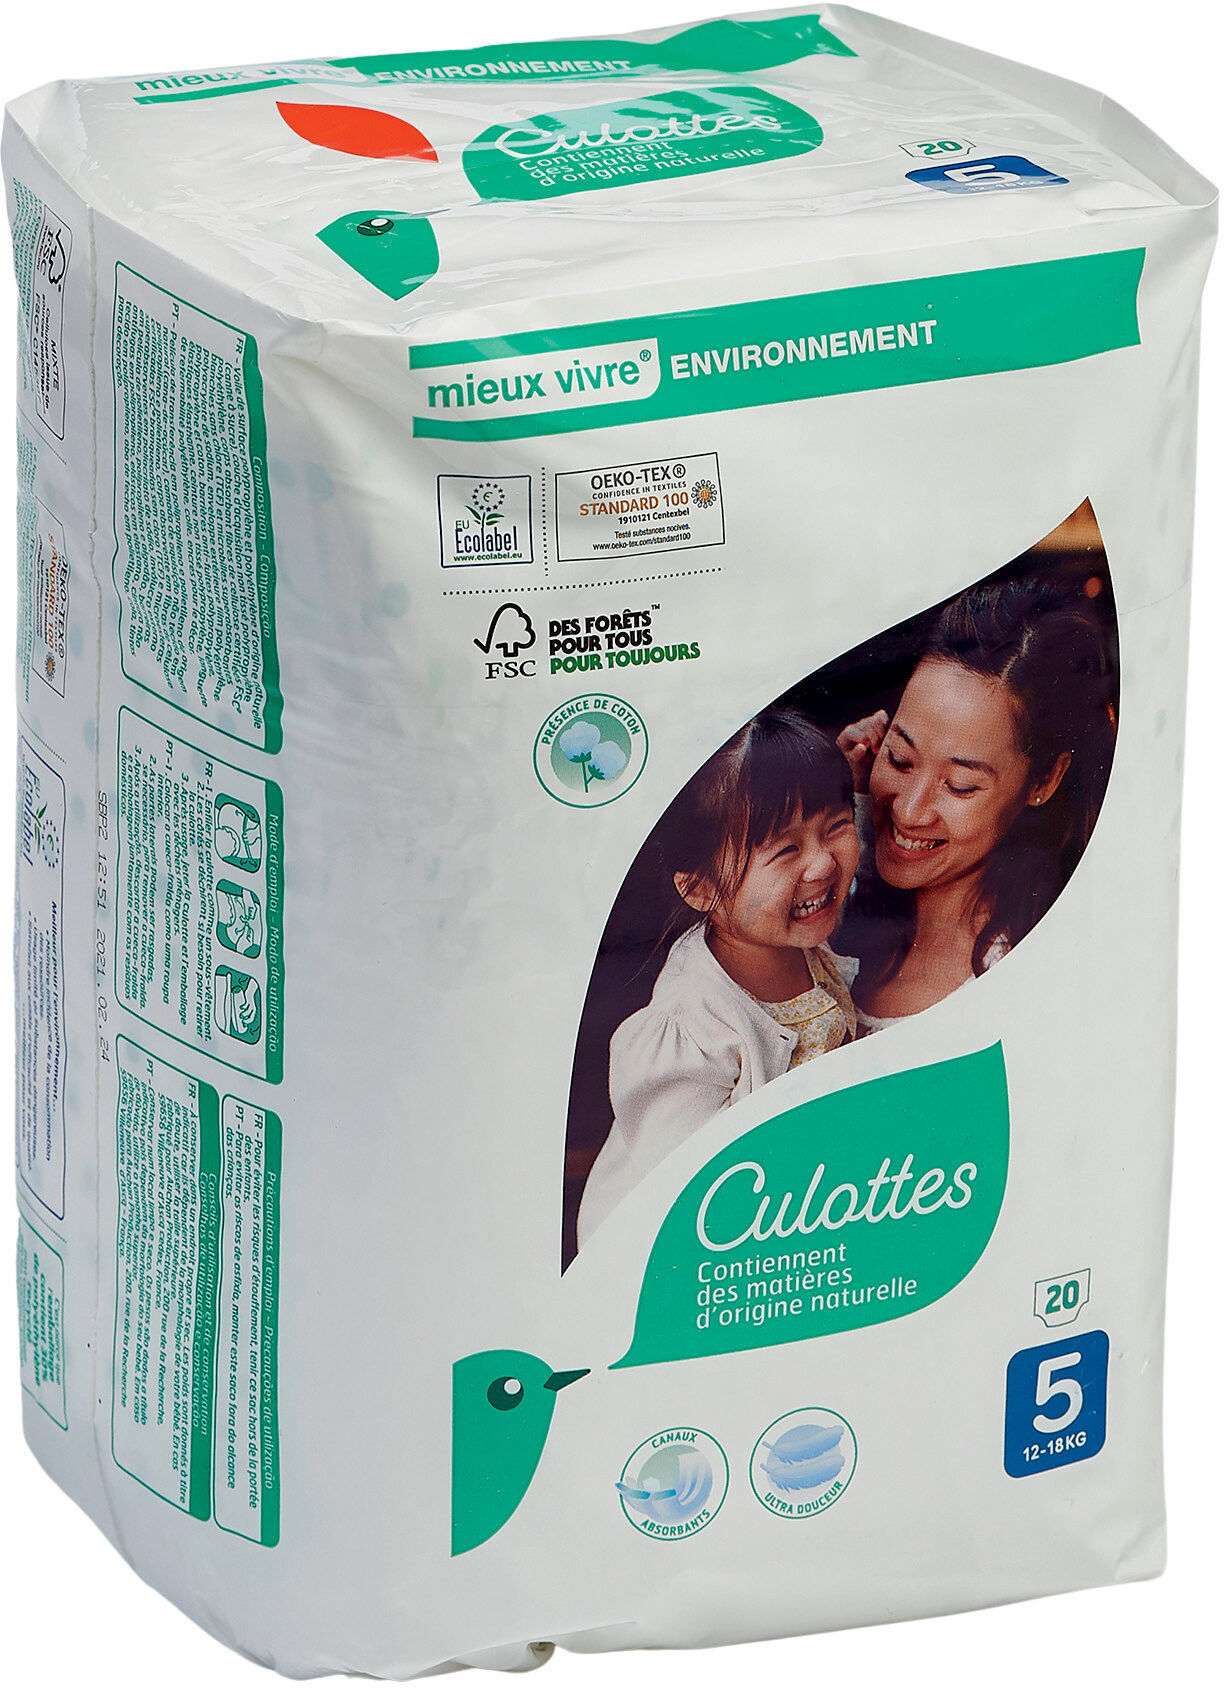 Culottes Taille 5 - 12-18kg x20 - Produit - fr